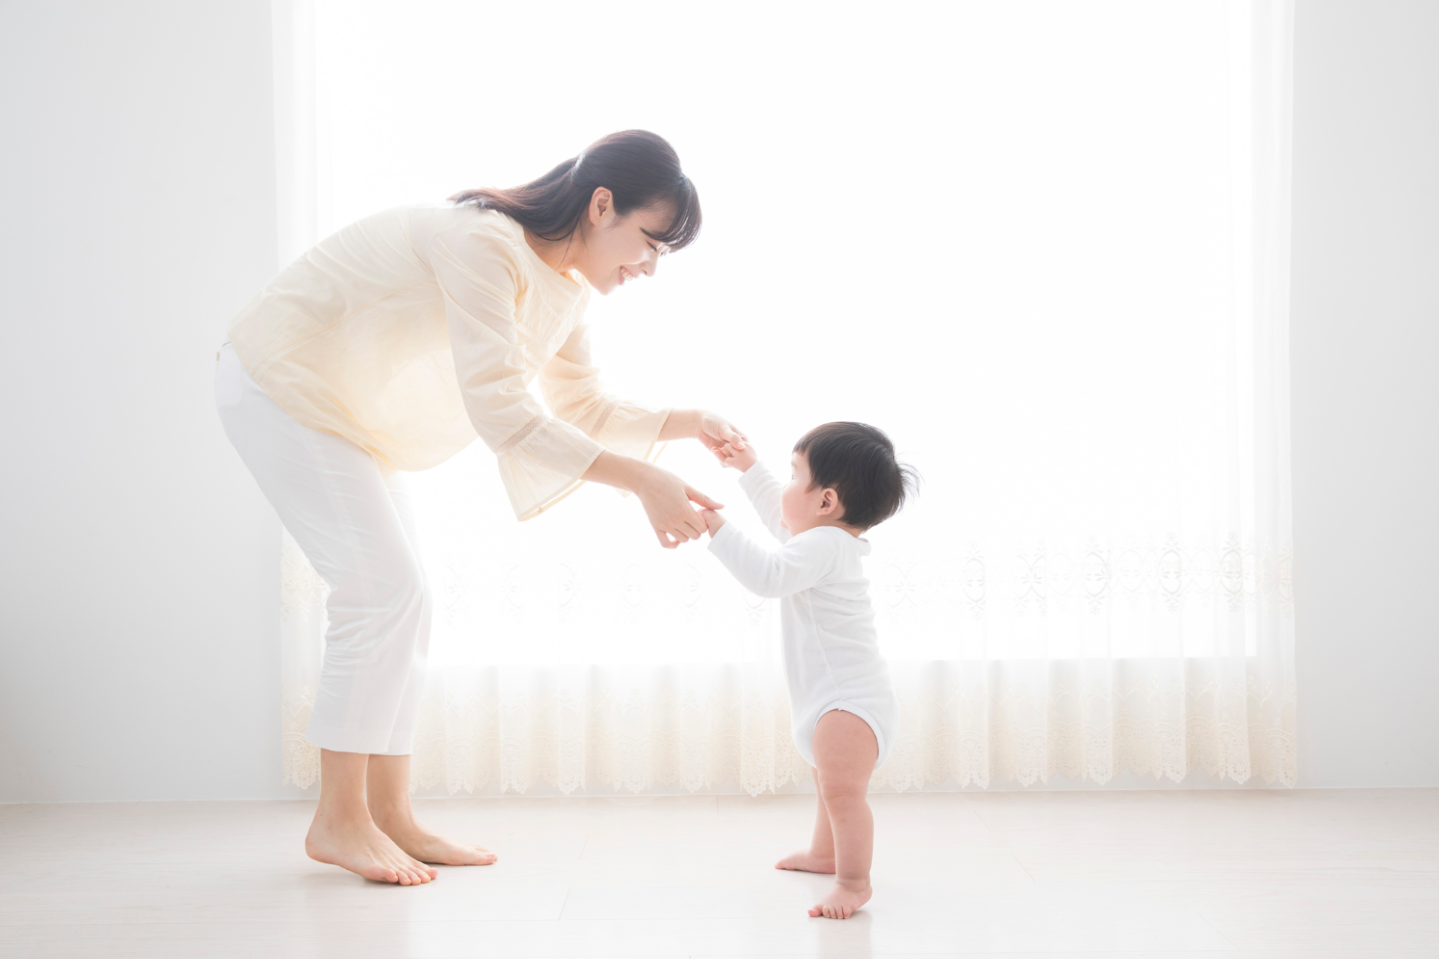 歩きはじめたばかりの赤ちゃんのために 親が気をつけるべき注意点とは